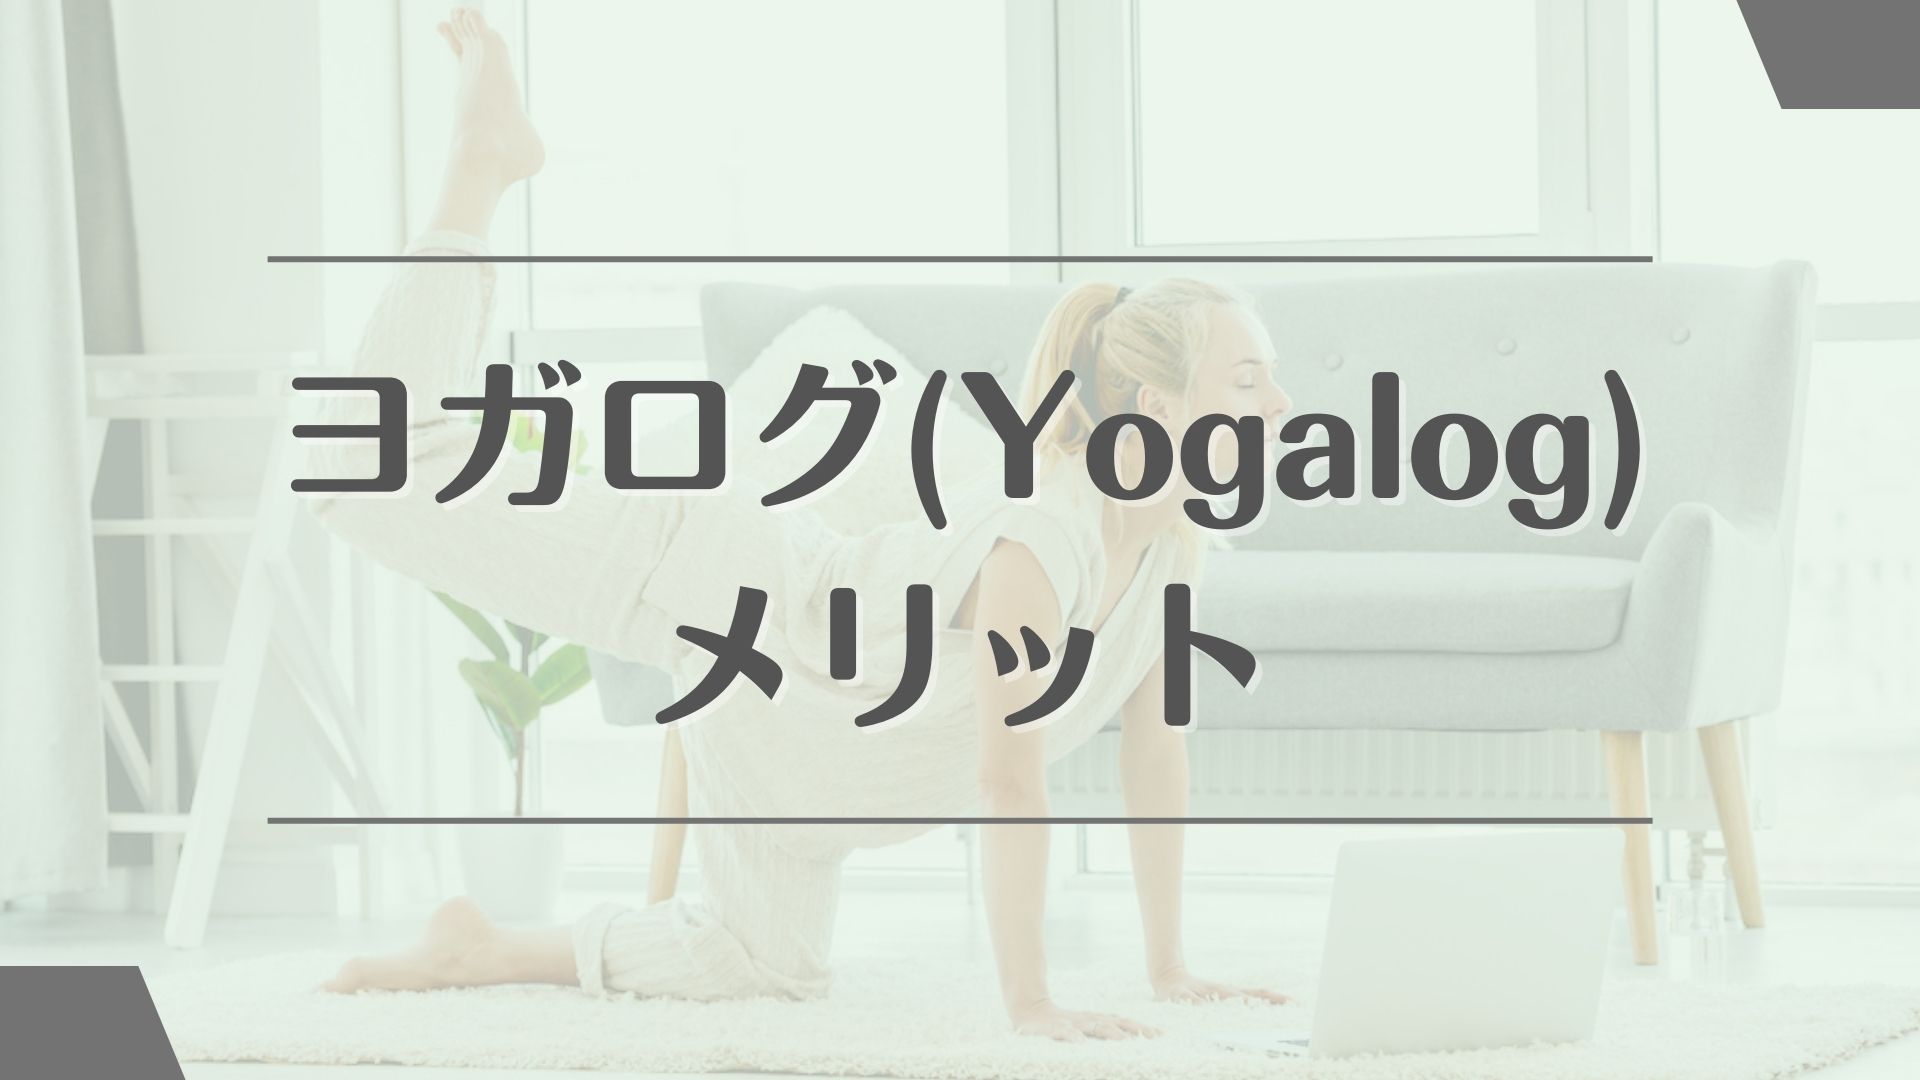 ヨガログ(Yogalog)のメリット